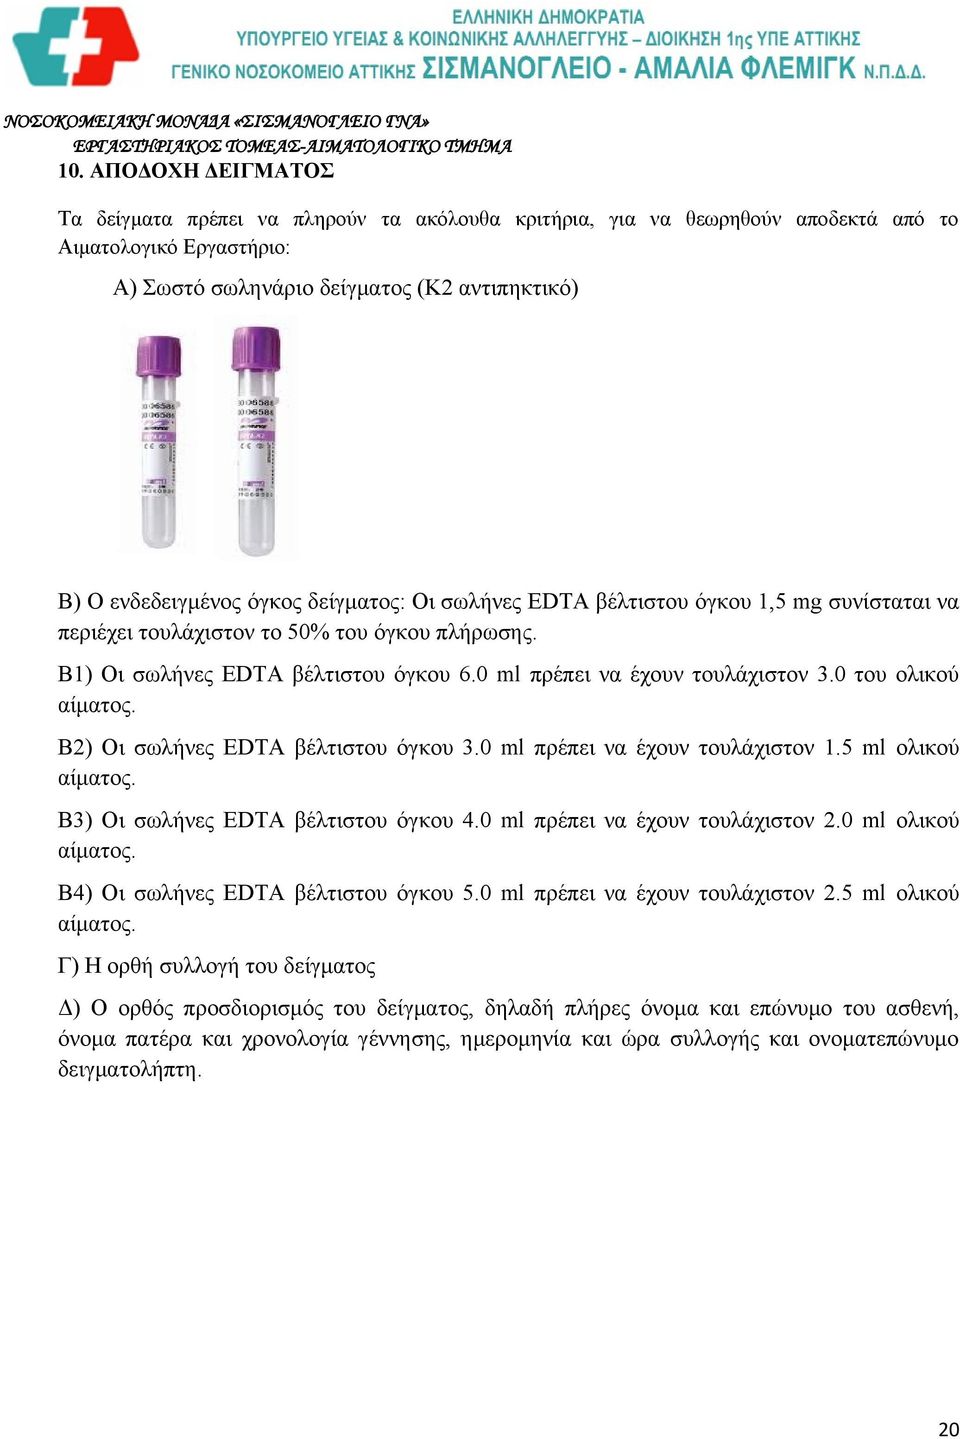 0 του ολικού αίματος. Β2) Οι σωλήνες EDTA βέλτιστου όγκου 3.0 ml πρέπει να έχουν τουλάχιστον 1.5 ml ολικού αίματος. Β3) Οι σωλήνες EDTA βέλτιστου όγκου 4.0 ml πρέπει να έχουν τουλάχιστον 2.